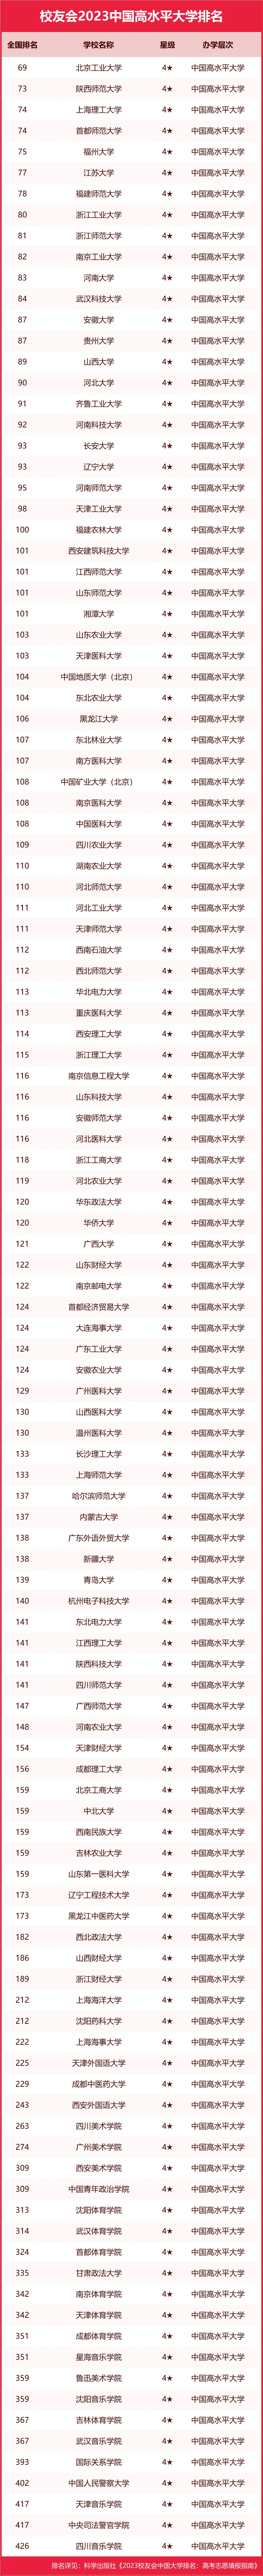 中国大学排名_排名大学中国有几所_中国大学排行qs